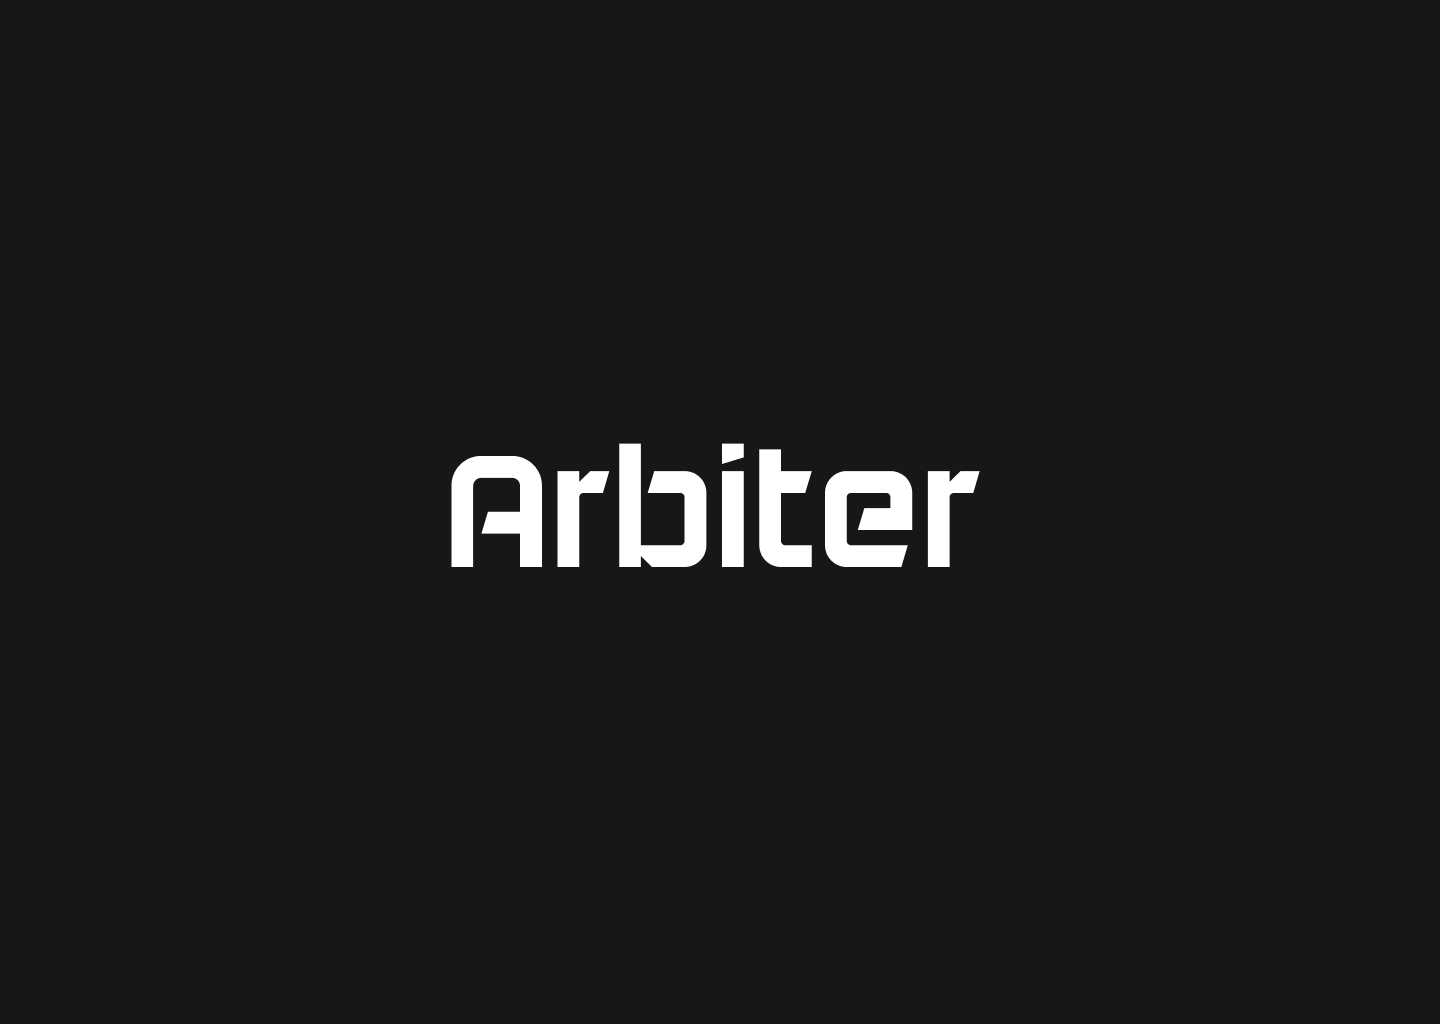 Cover Image for Arbiter v0.4.0 and Arbiter Core v0.6.0